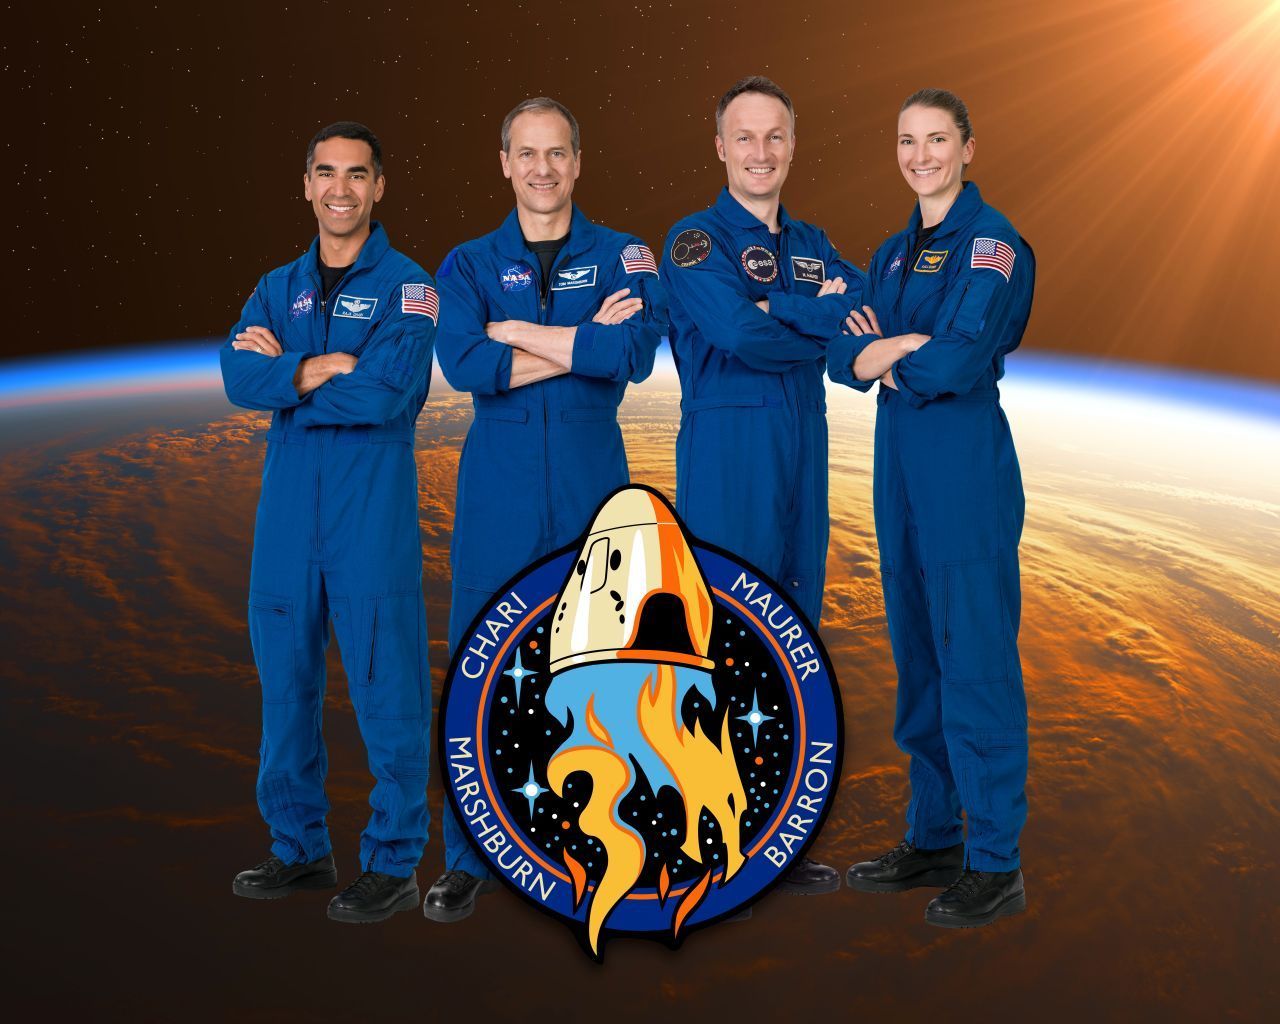 Es würden zwar 7 Astronauten in den Crew Dragon passen, die NASA bucht aber bisher nur 4 Plätze. Neben Matthias Maurer nehmen daher 2 NASA-Astronauten und eine Astronautin im Raumschiff Platz. Im Bild das gemeinsame "Mission-Batch" (Missionsabzeichen). Wir stellen die Crew im Kurzporträt vor.